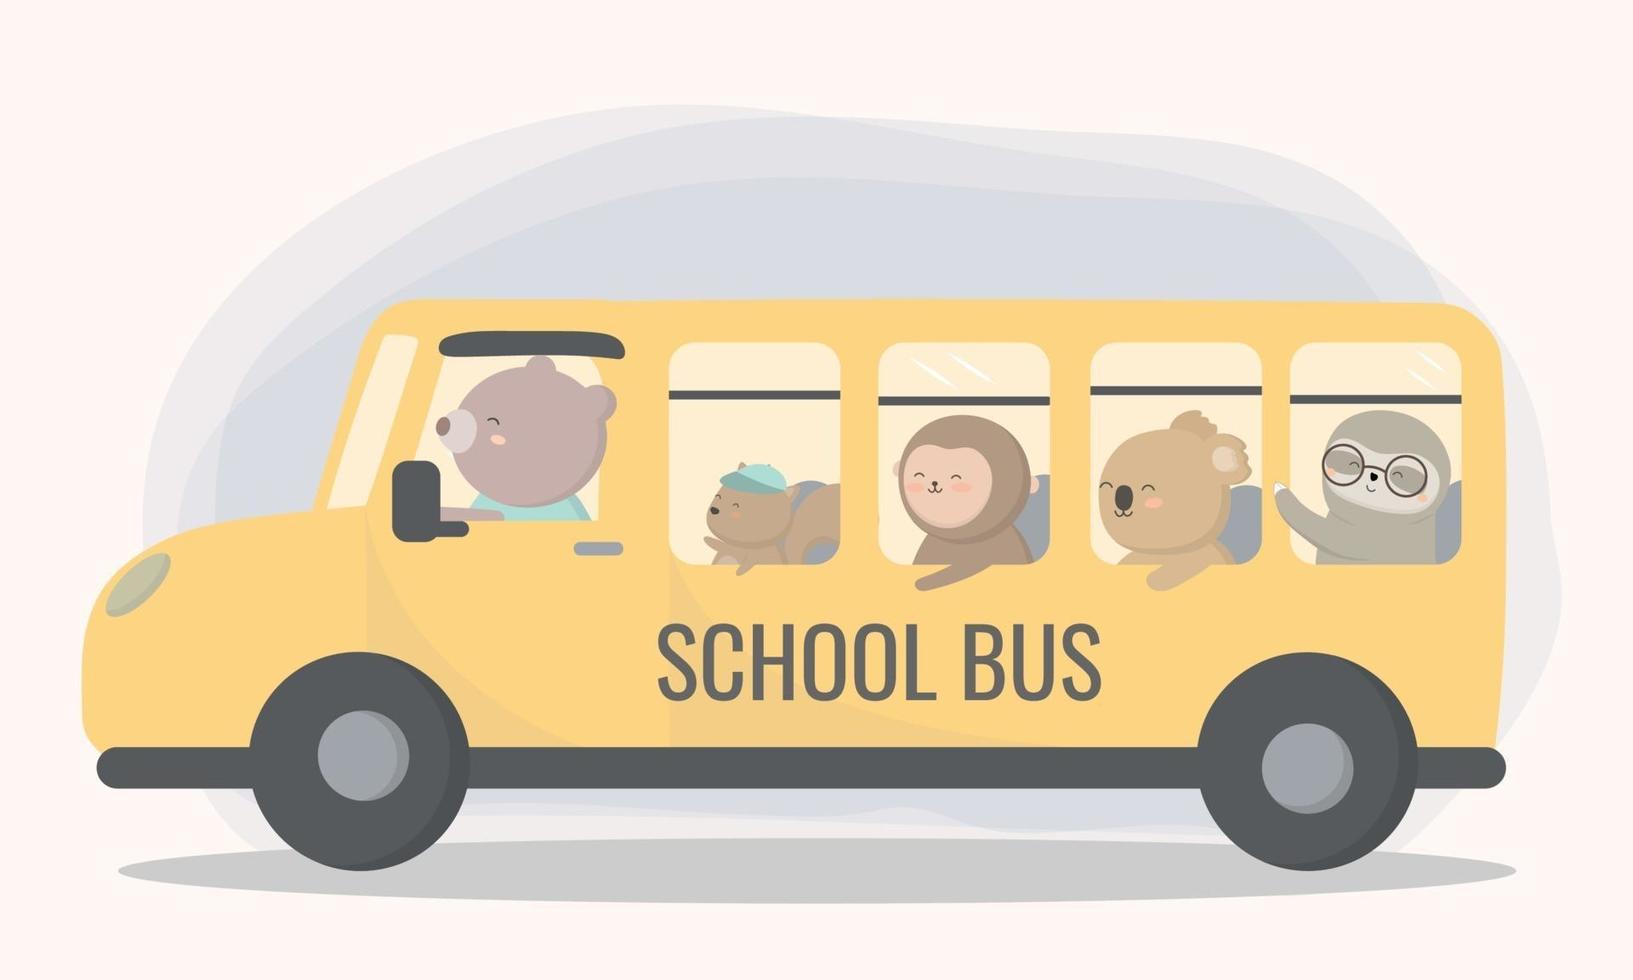 La escuela organiza autobuses de enlace para los estudiantes. vector